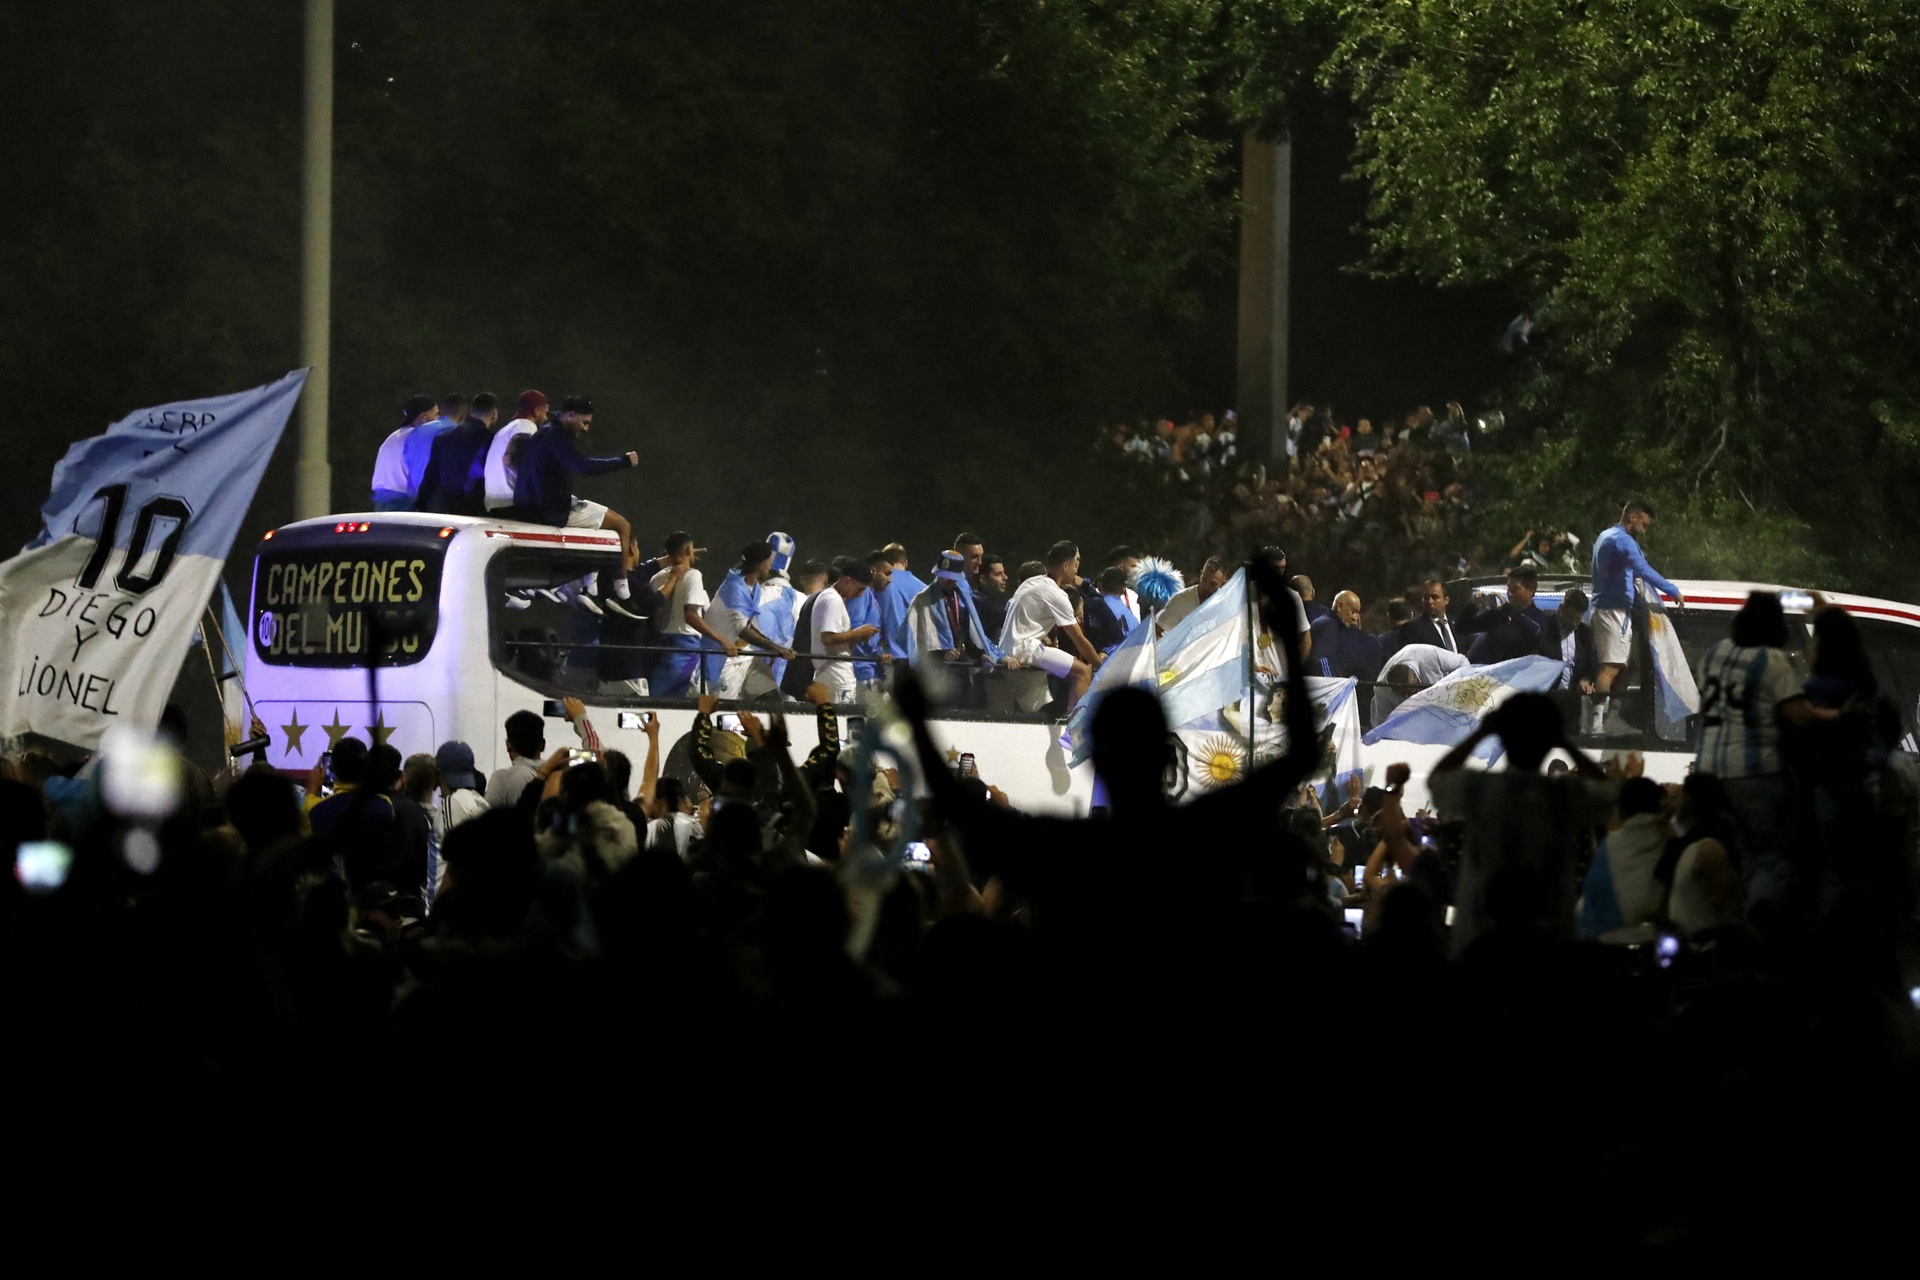 Hết hồn khoảnh khắc Messi và các đồng đội suýt vướng phải dây điện trong lúc diễu hành ăn mừng - Ảnh 3.